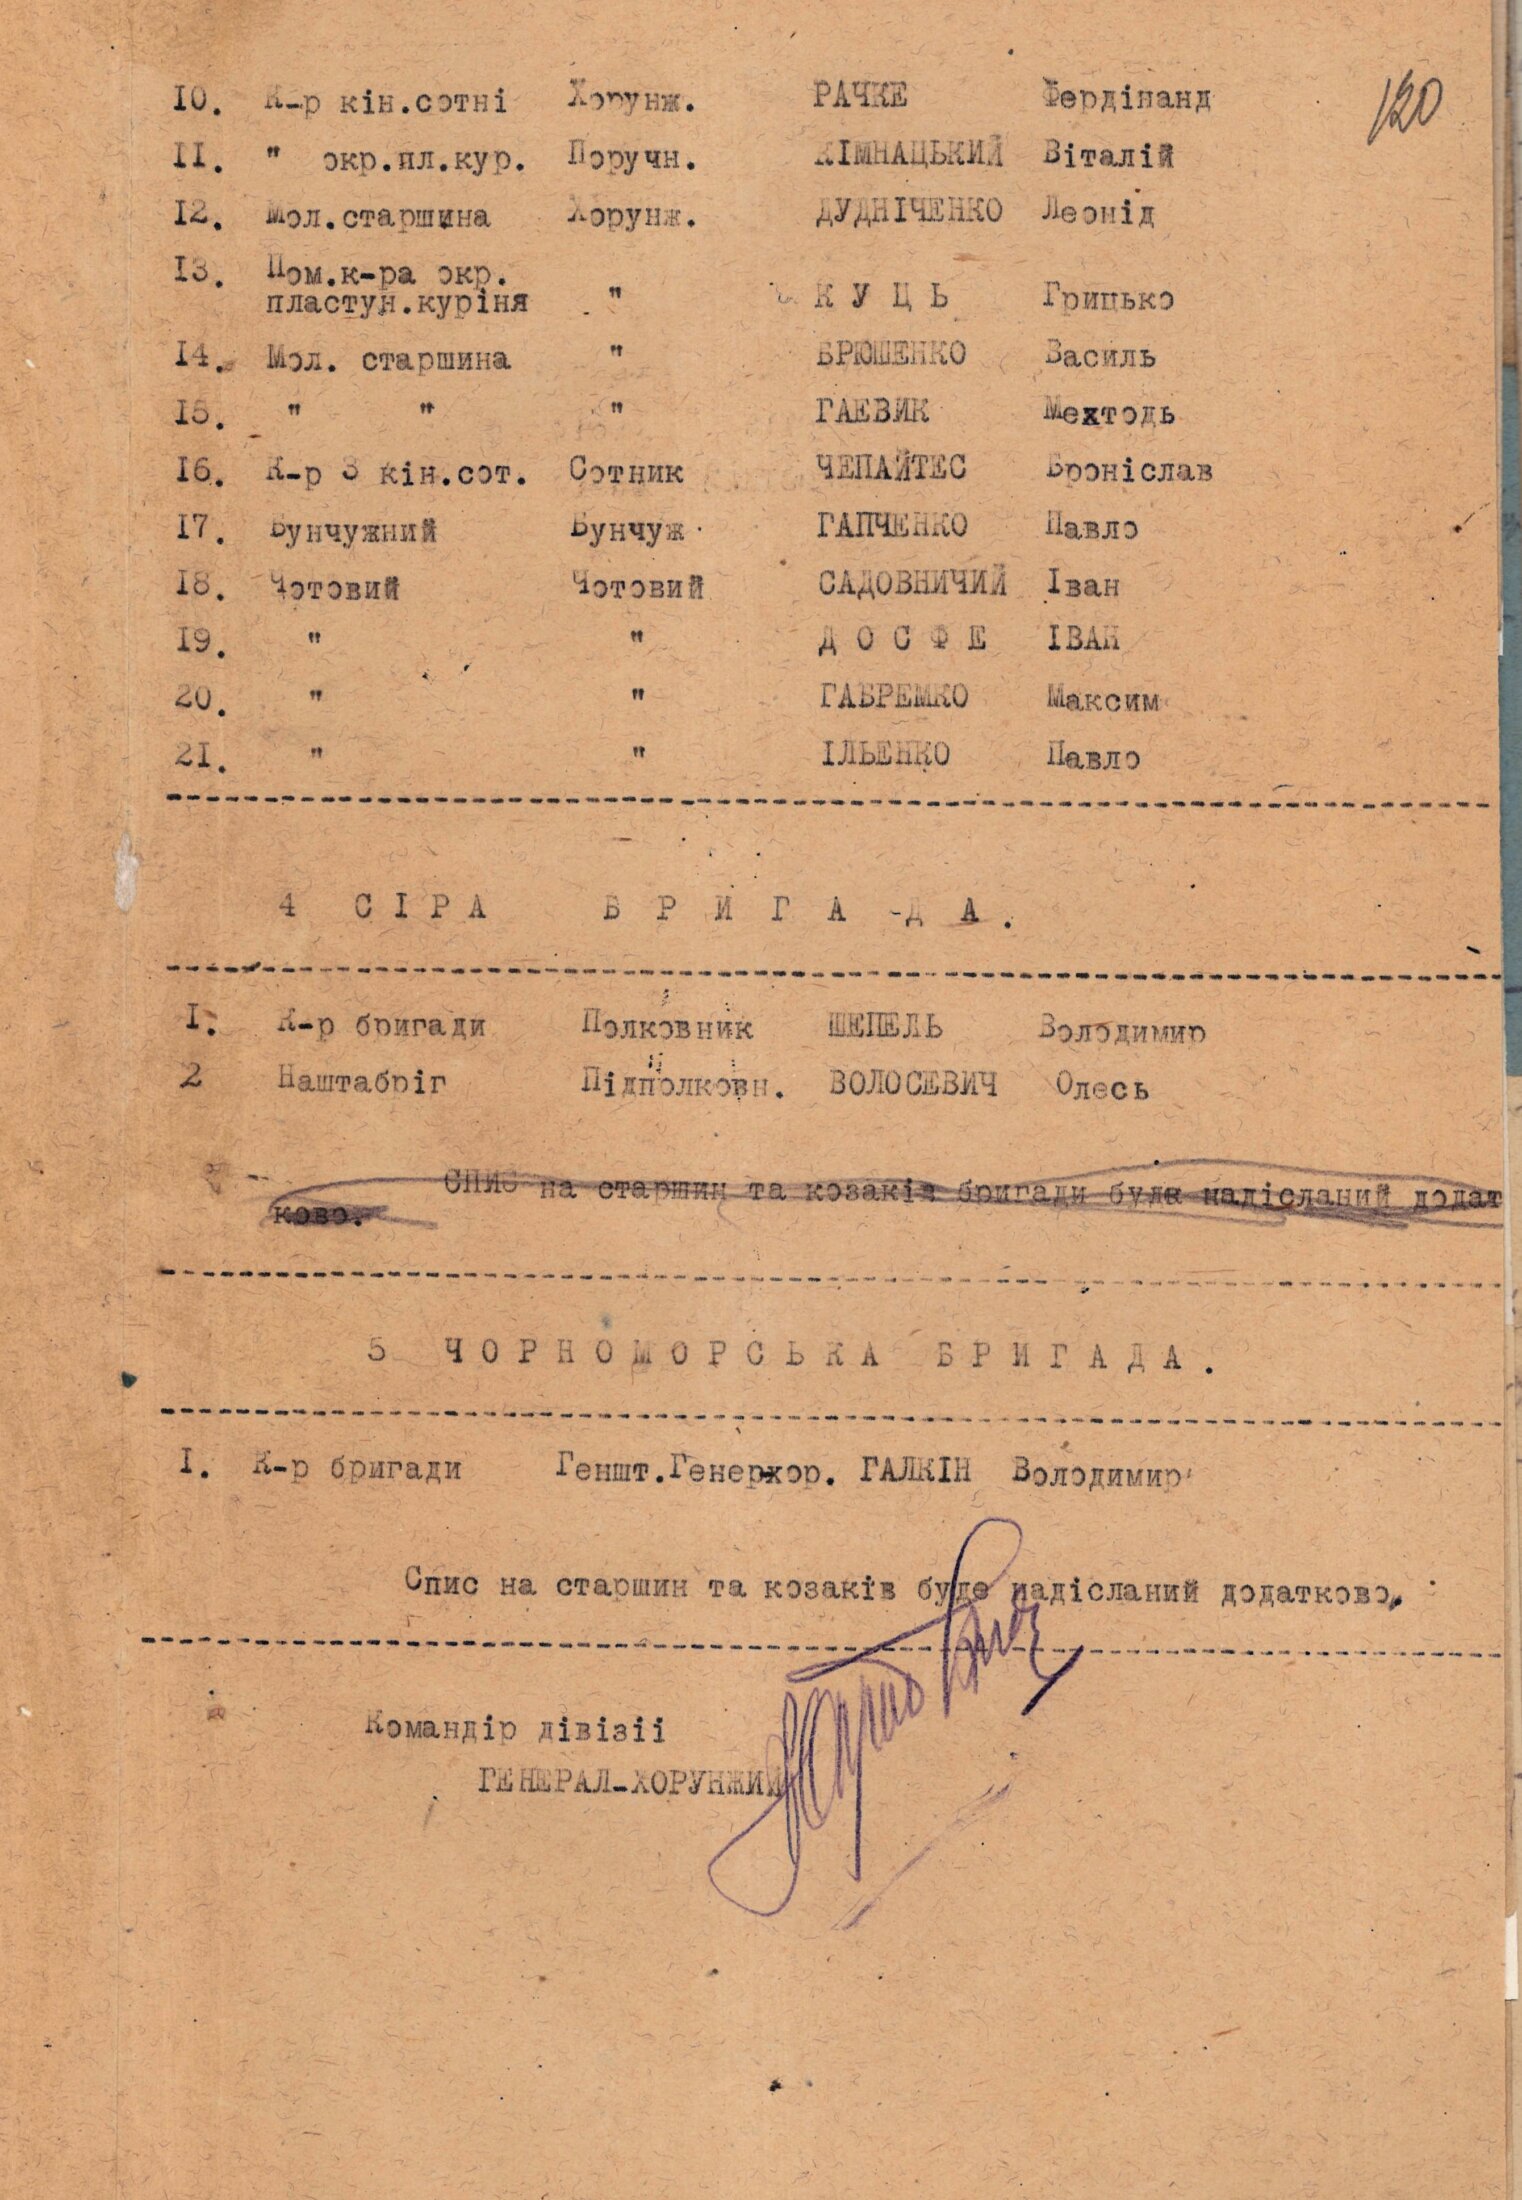 Список старшин та козаків 2-ї Волинської дивізії Армії УНР, представлених до нагородження польським орденом - “Хрест Хоробрих”. 1920 р.